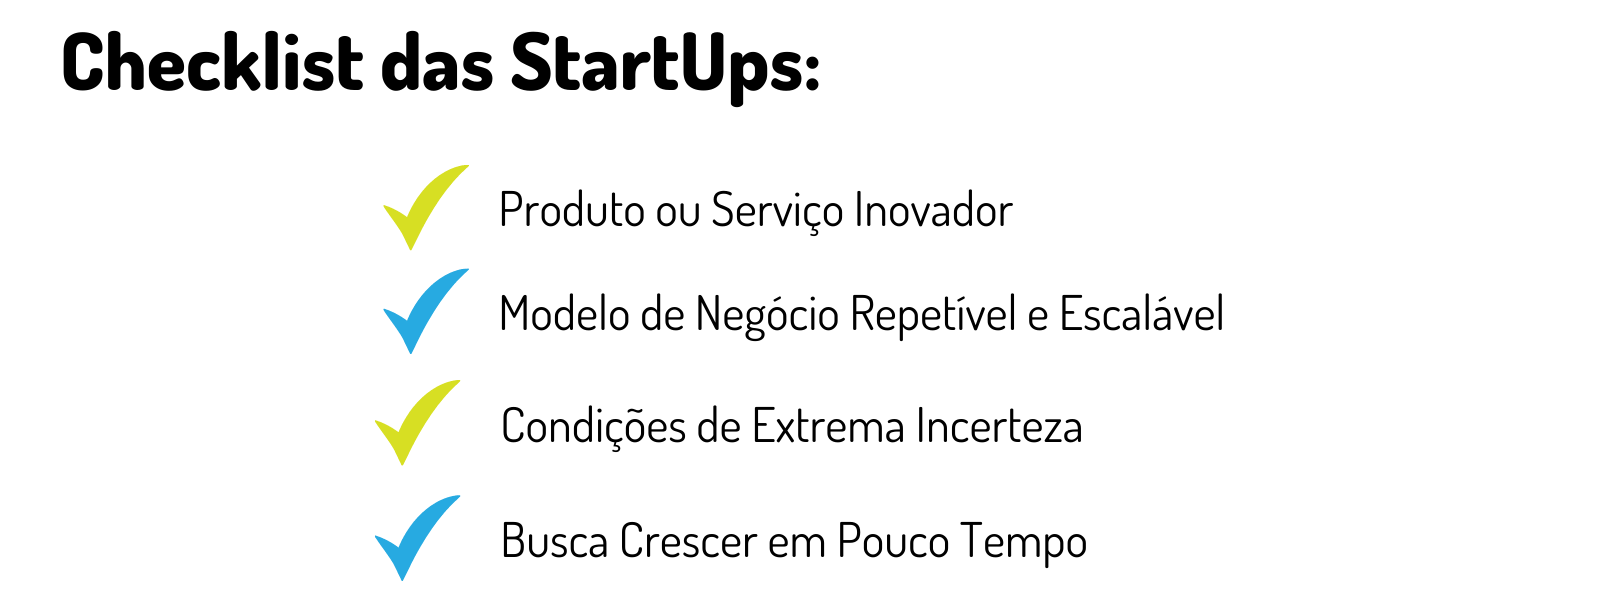 Infográfico Checklist das StartUps